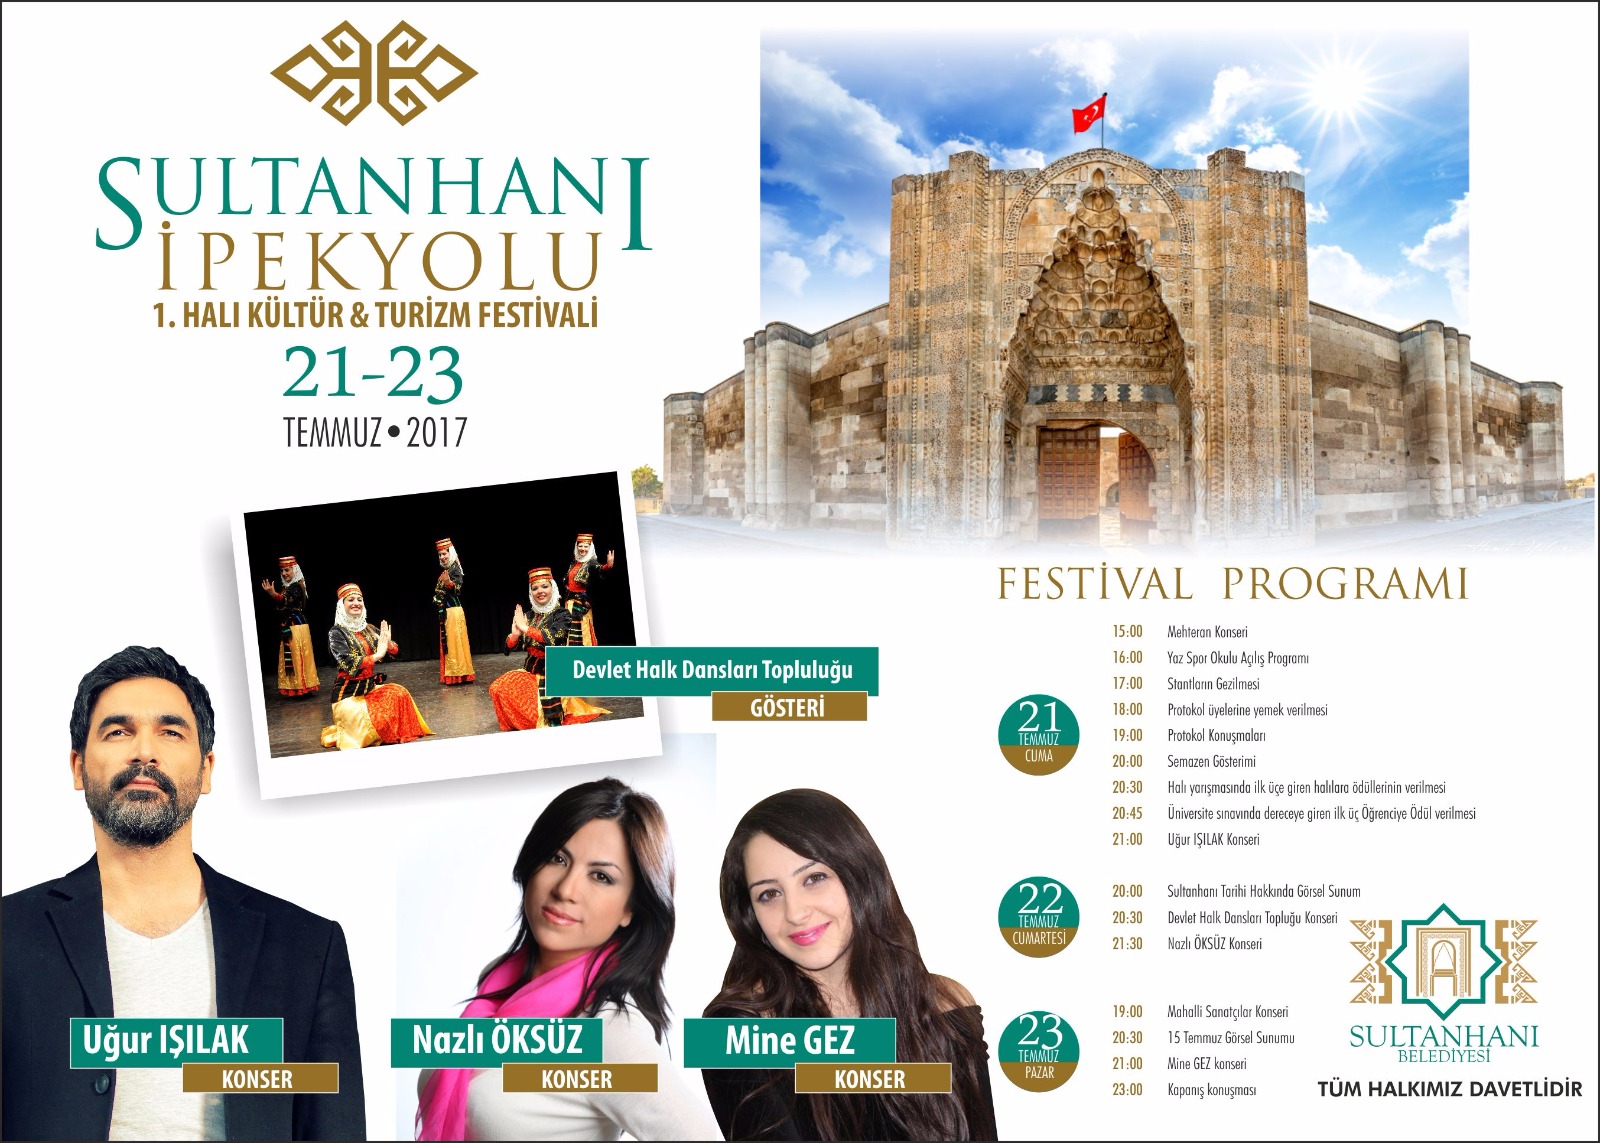 İpek Yolu Halı Kültür Ve Turizm Festivali Düzenleniyor